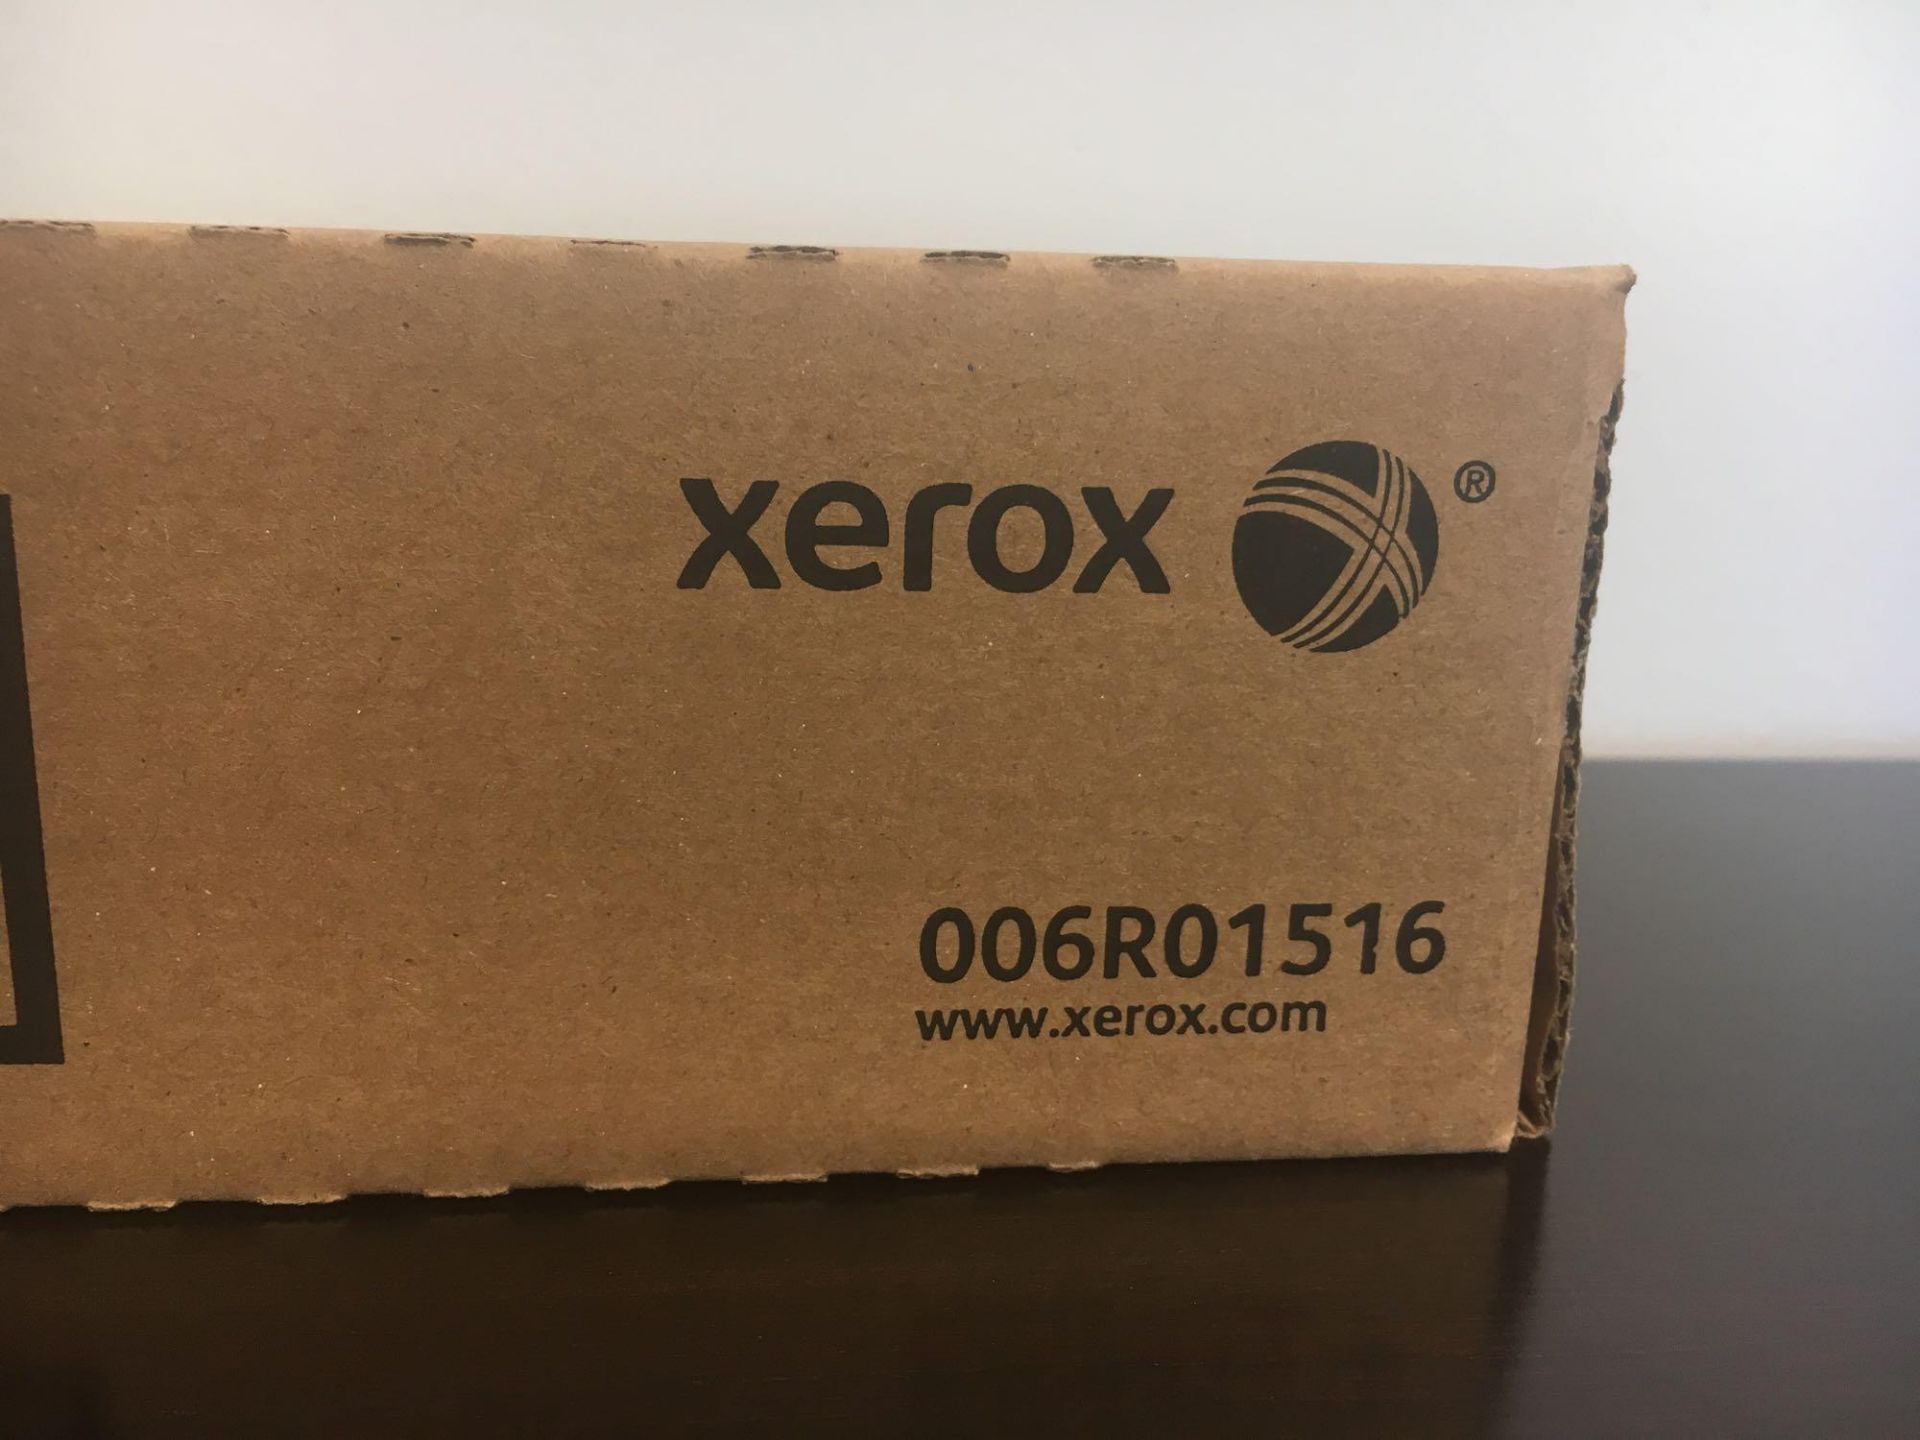 Xerox Cyan Toner 006R01516 - Image 2 of 2